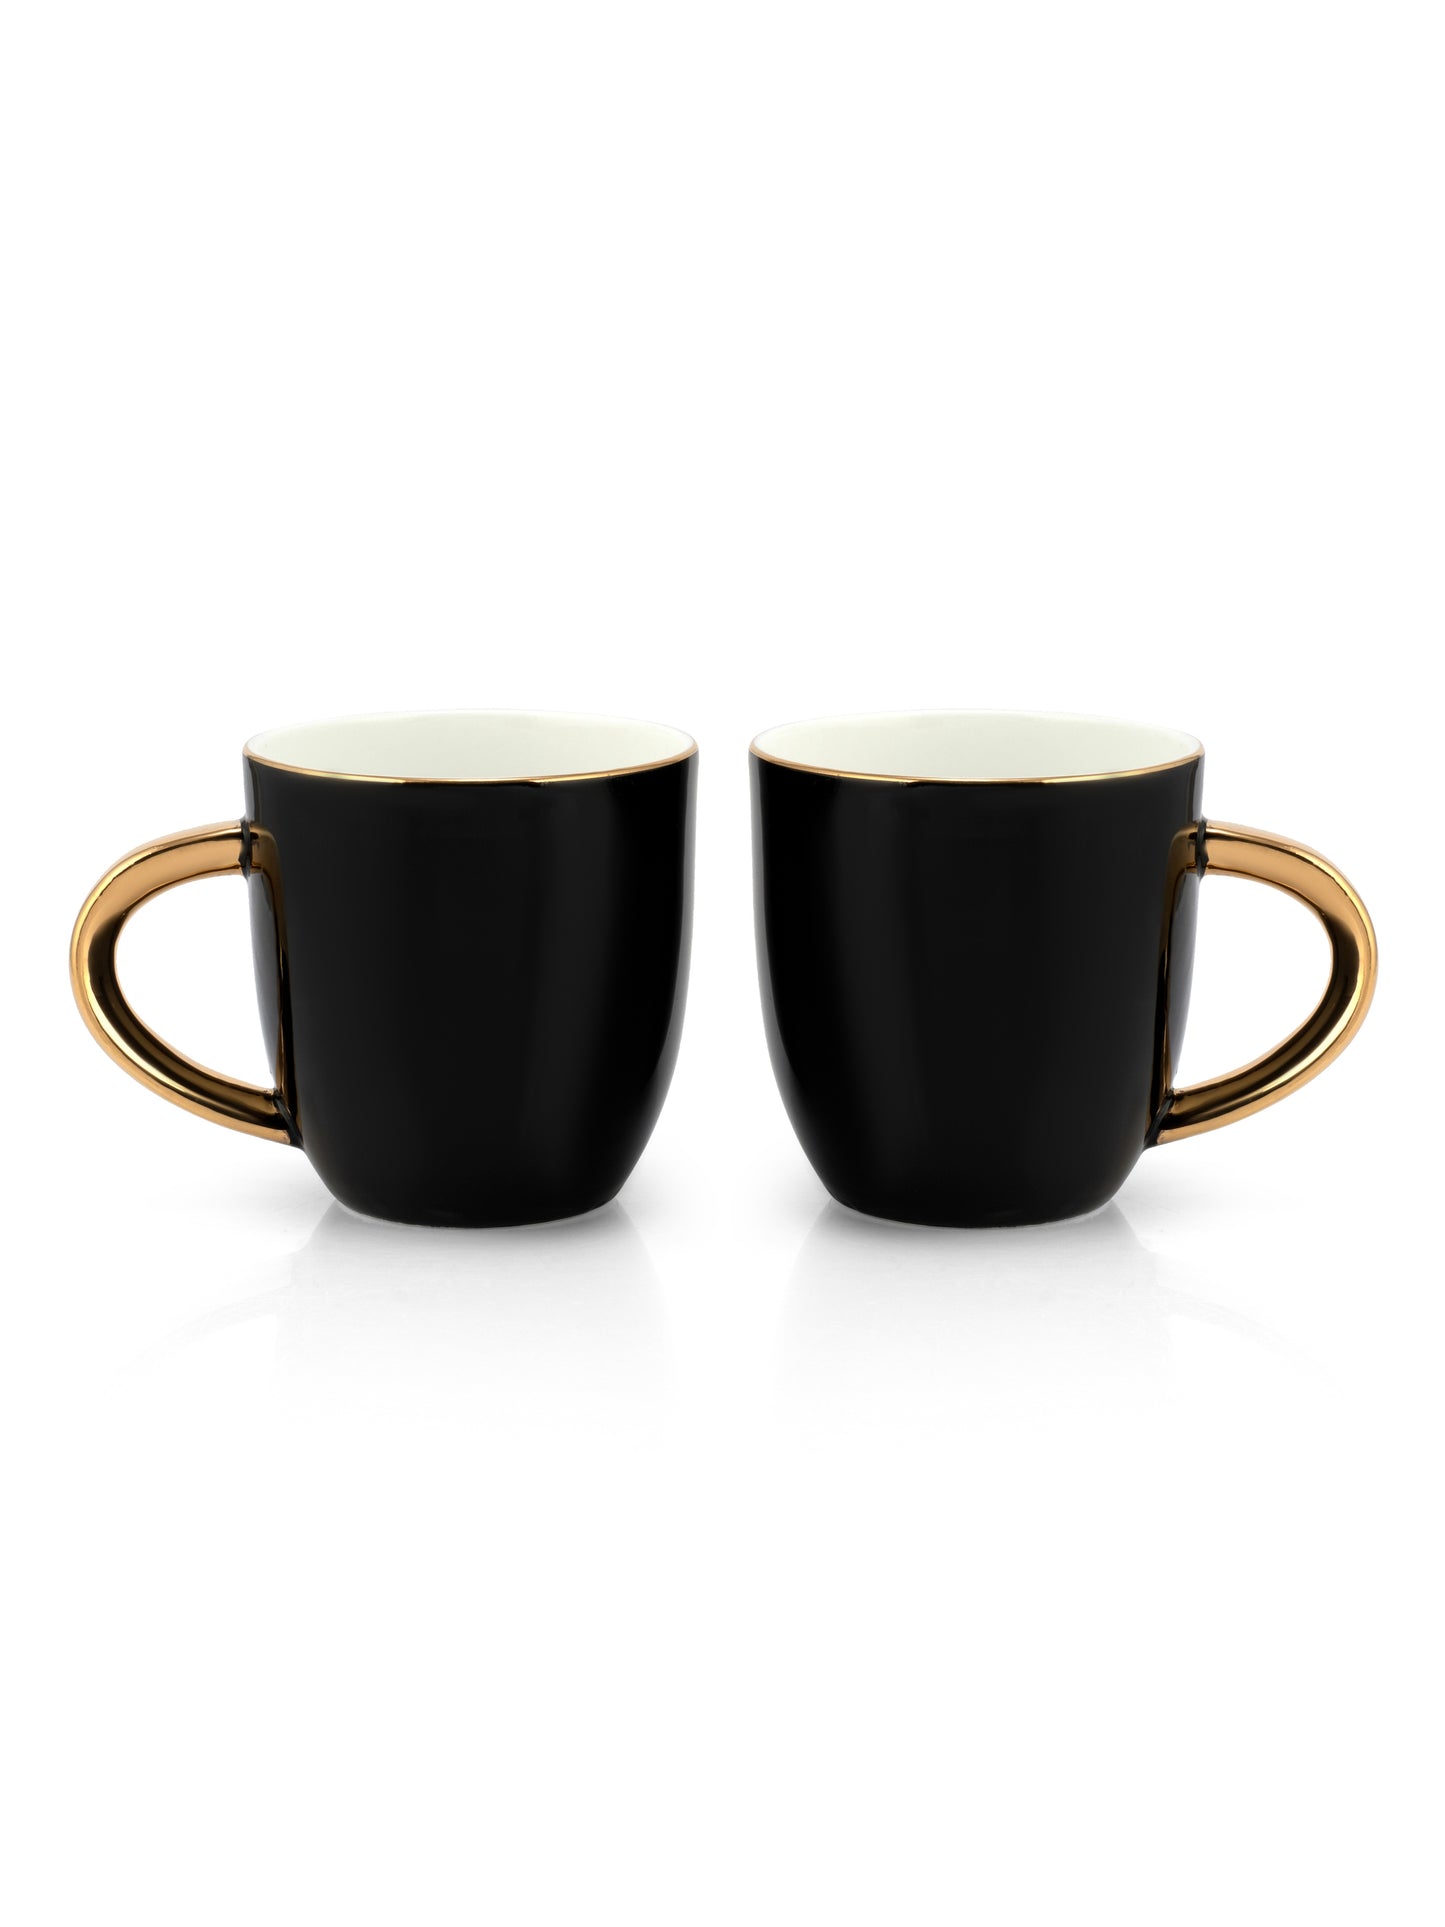 JCPL Ornate Skylight Coffee Mug/ Tea Cup, 220ml, Set of 6, Black